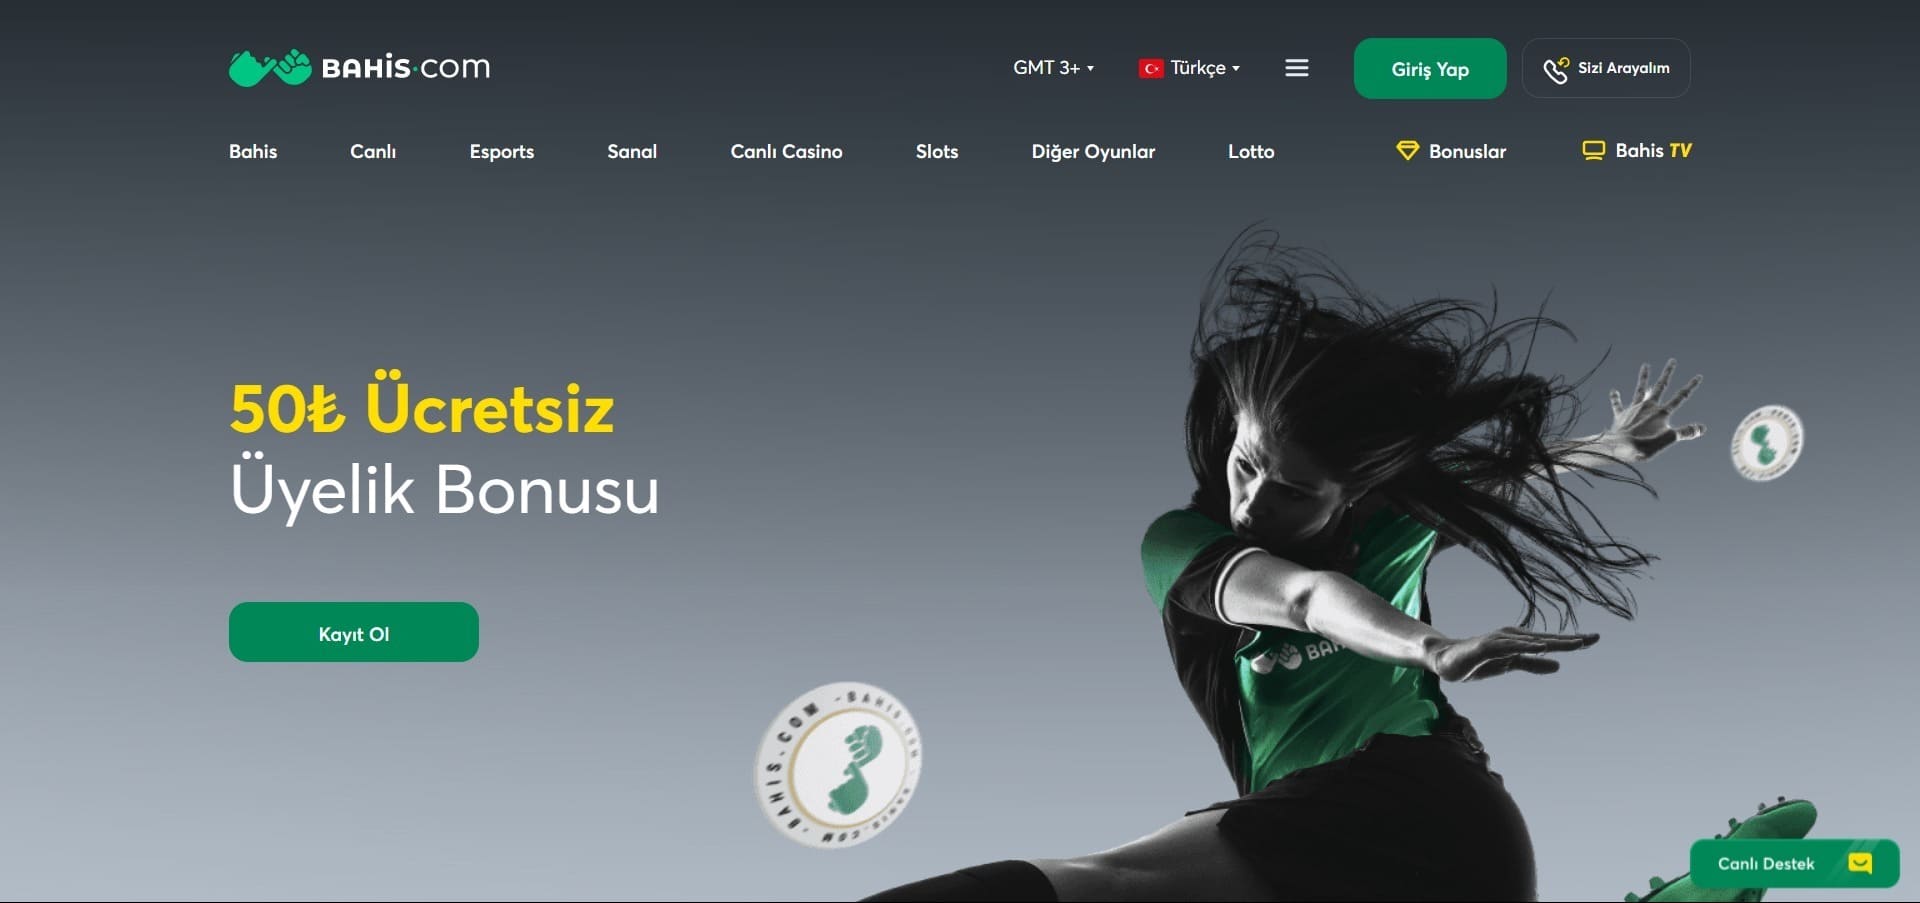 Bahis Casino'nun resmi web sitesi